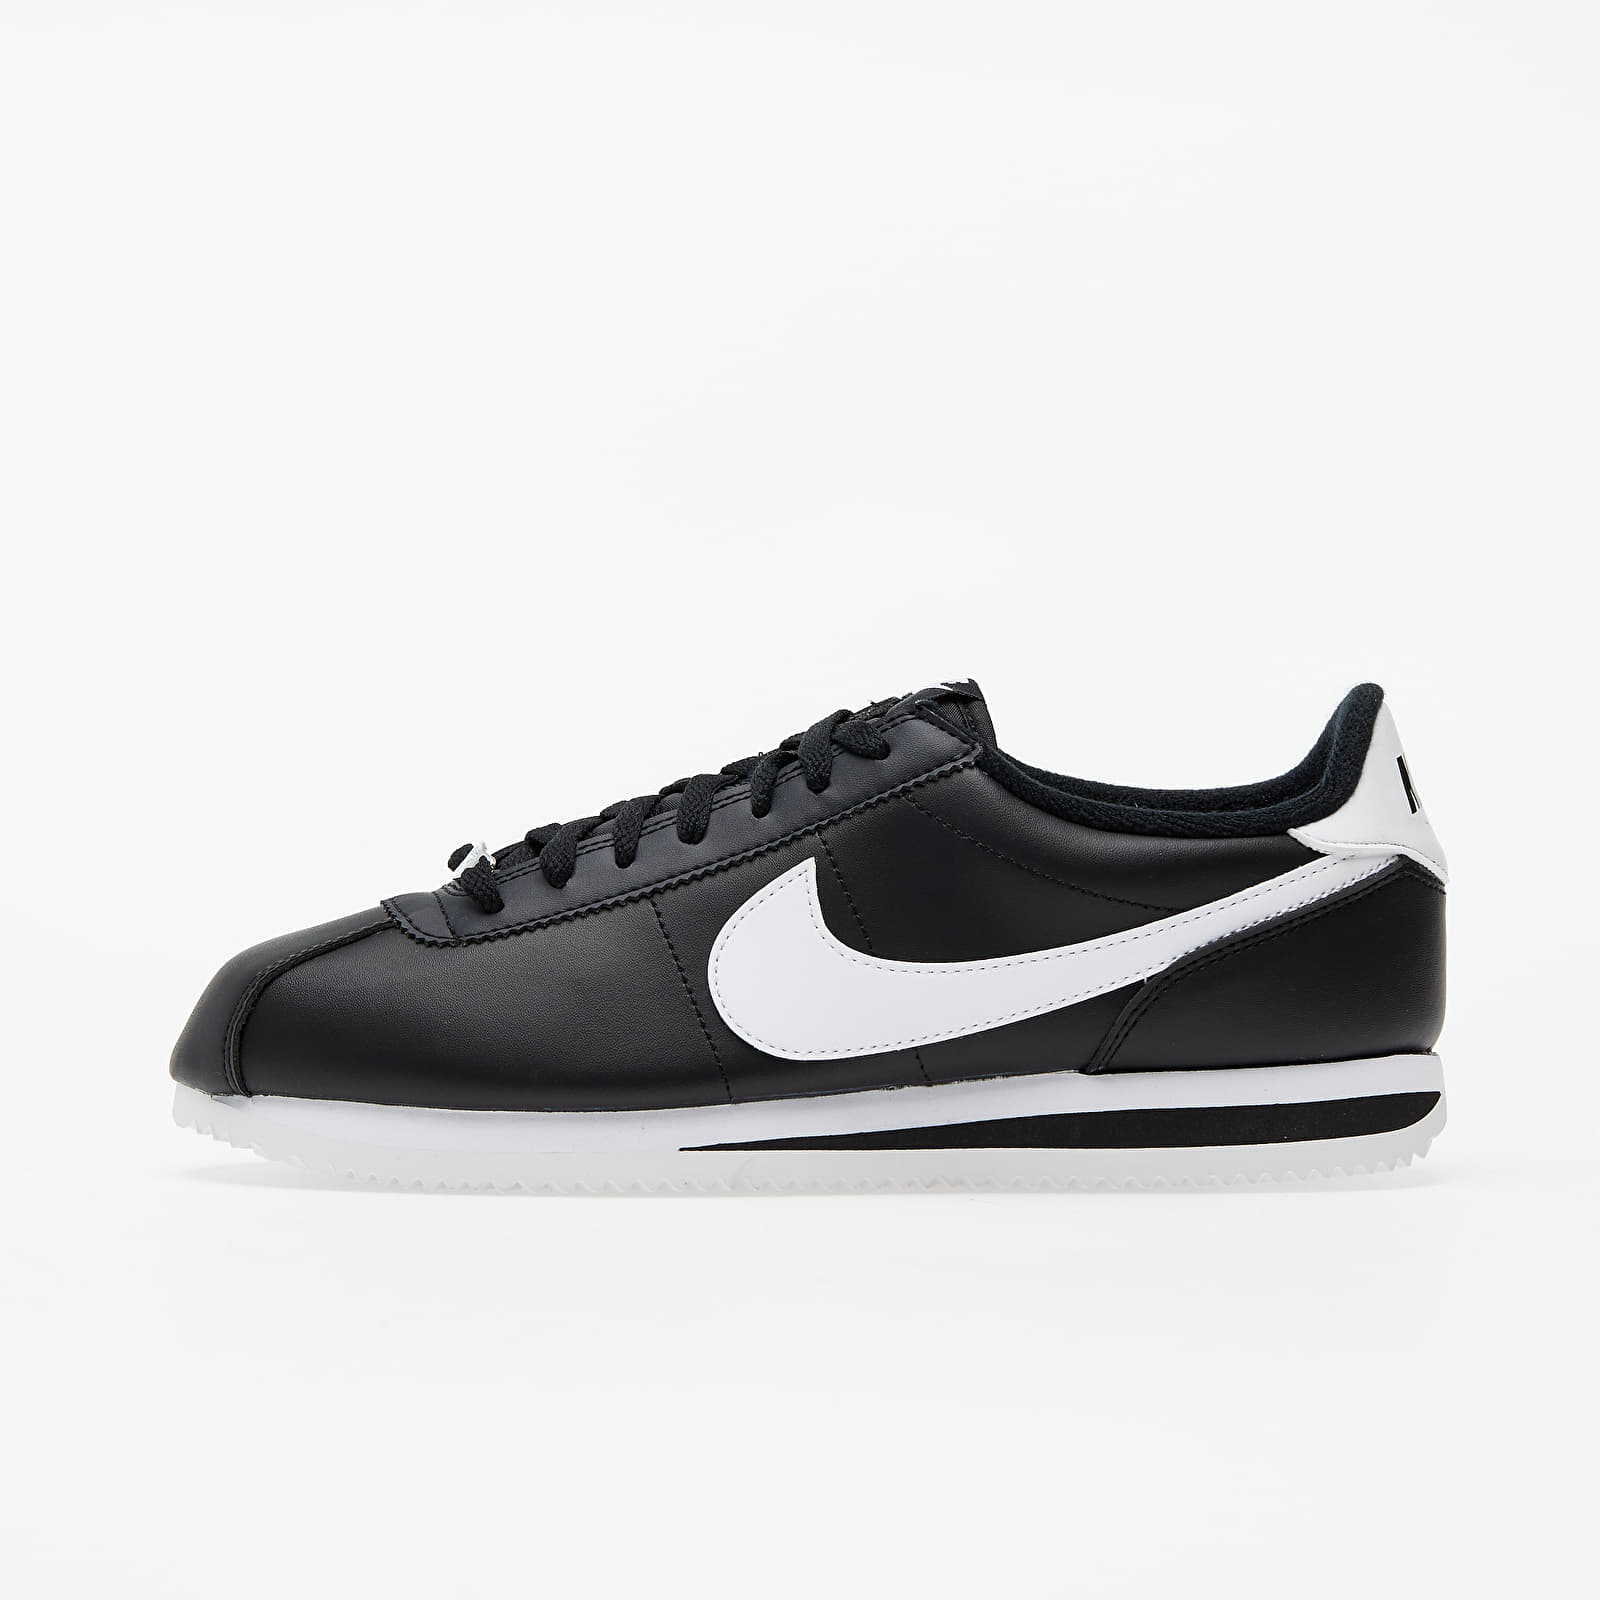 Nike Cortez Basic Leather Black/ White-Metallic Silver 819719-012